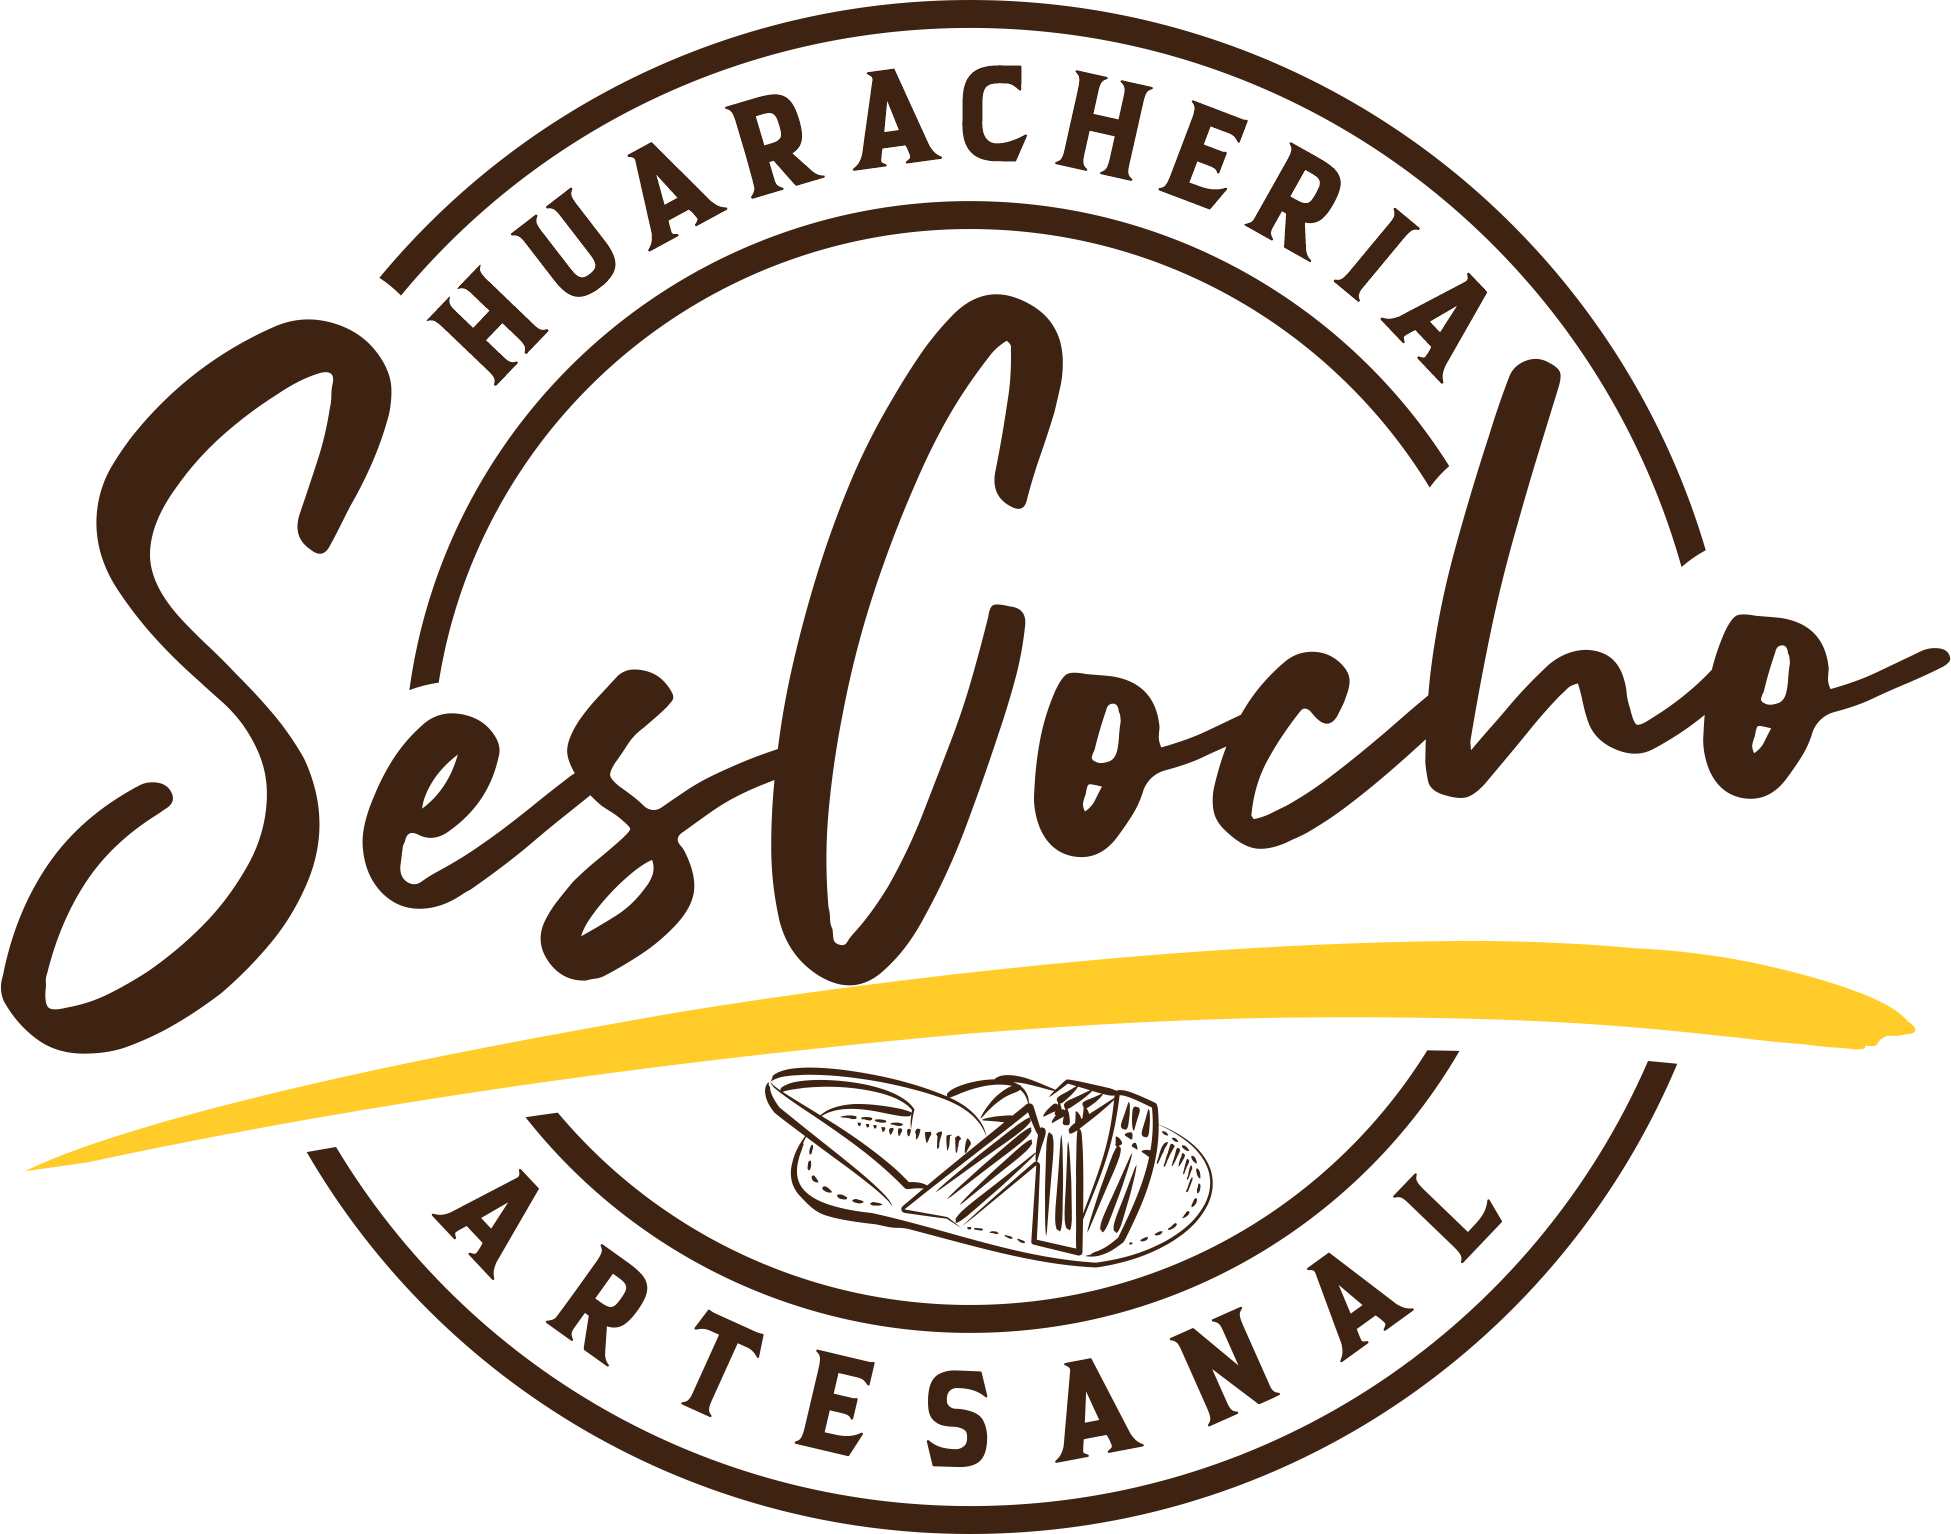 Sescocho Huaracheria